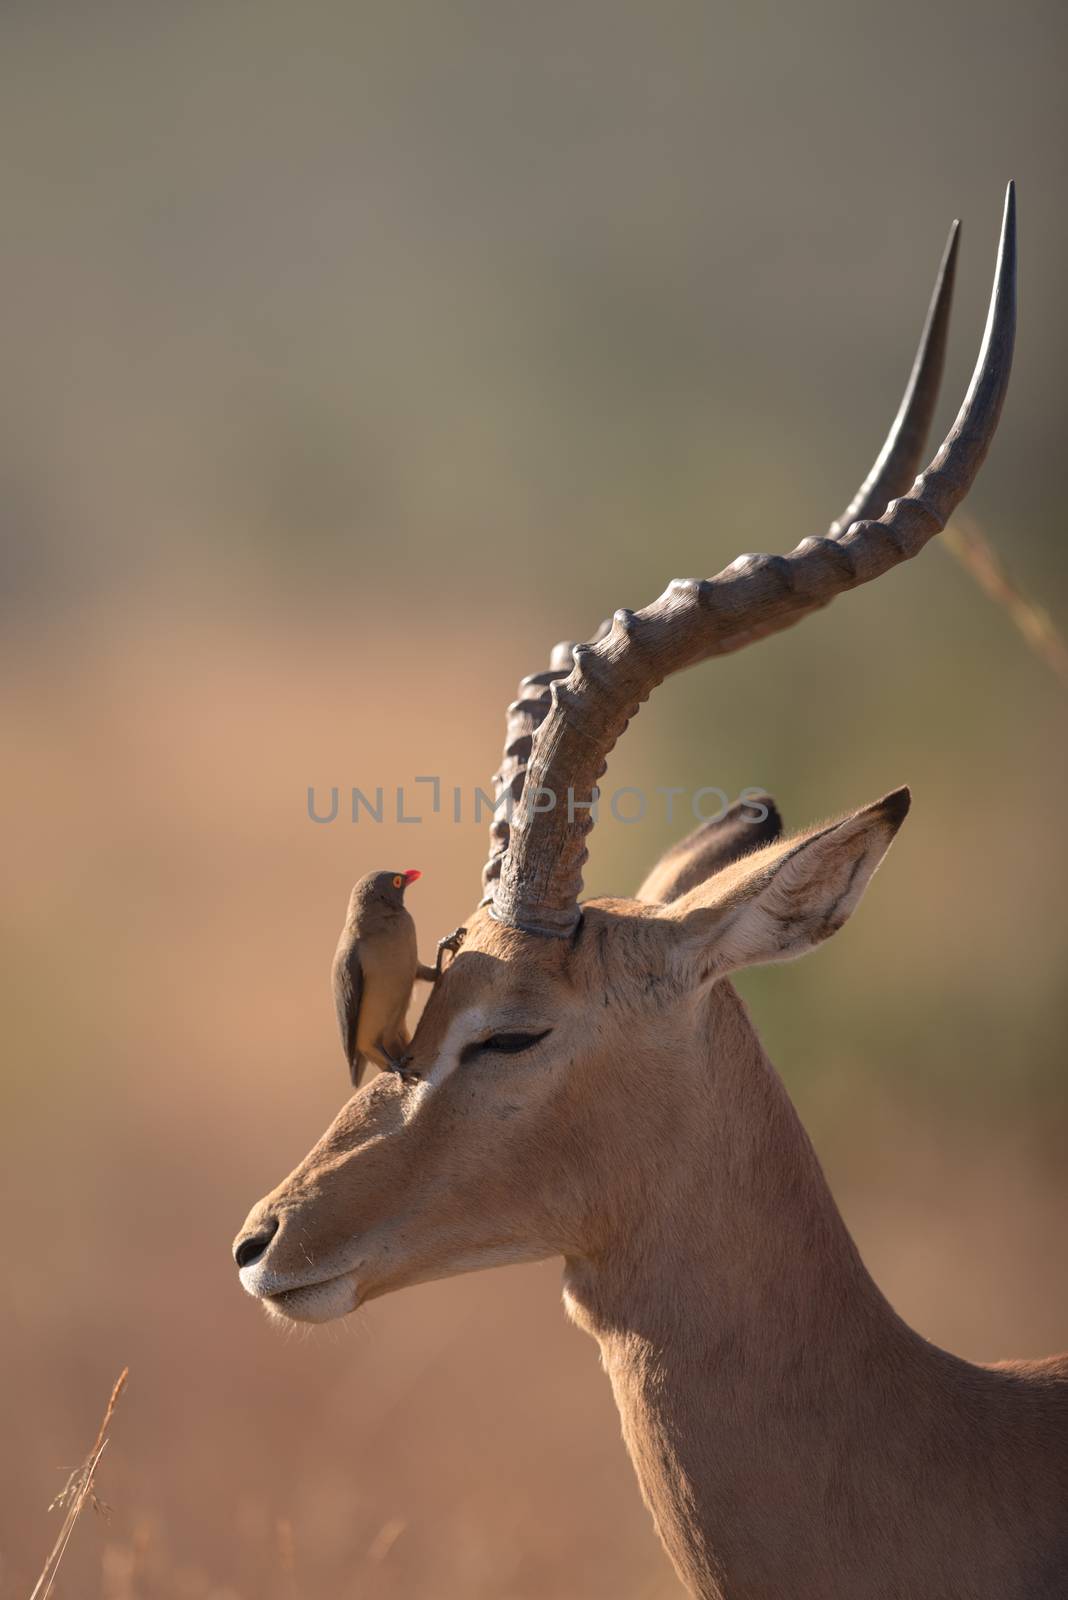 Impala in the wilderness by ozkanzozmen